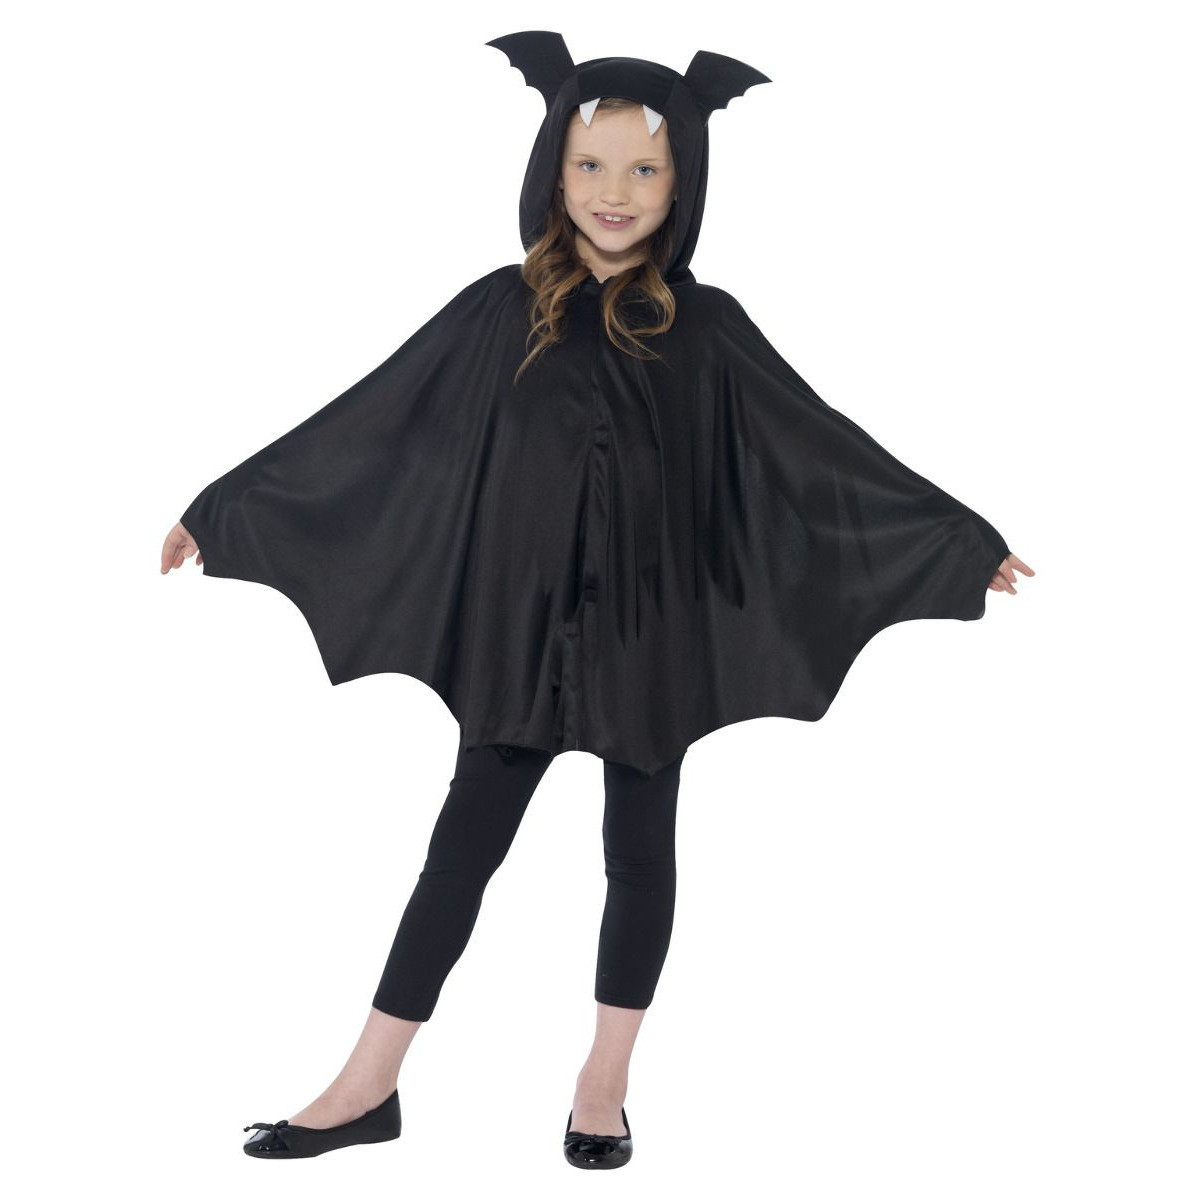 Vleermuis verkleed kostuum-cape voor kinderen